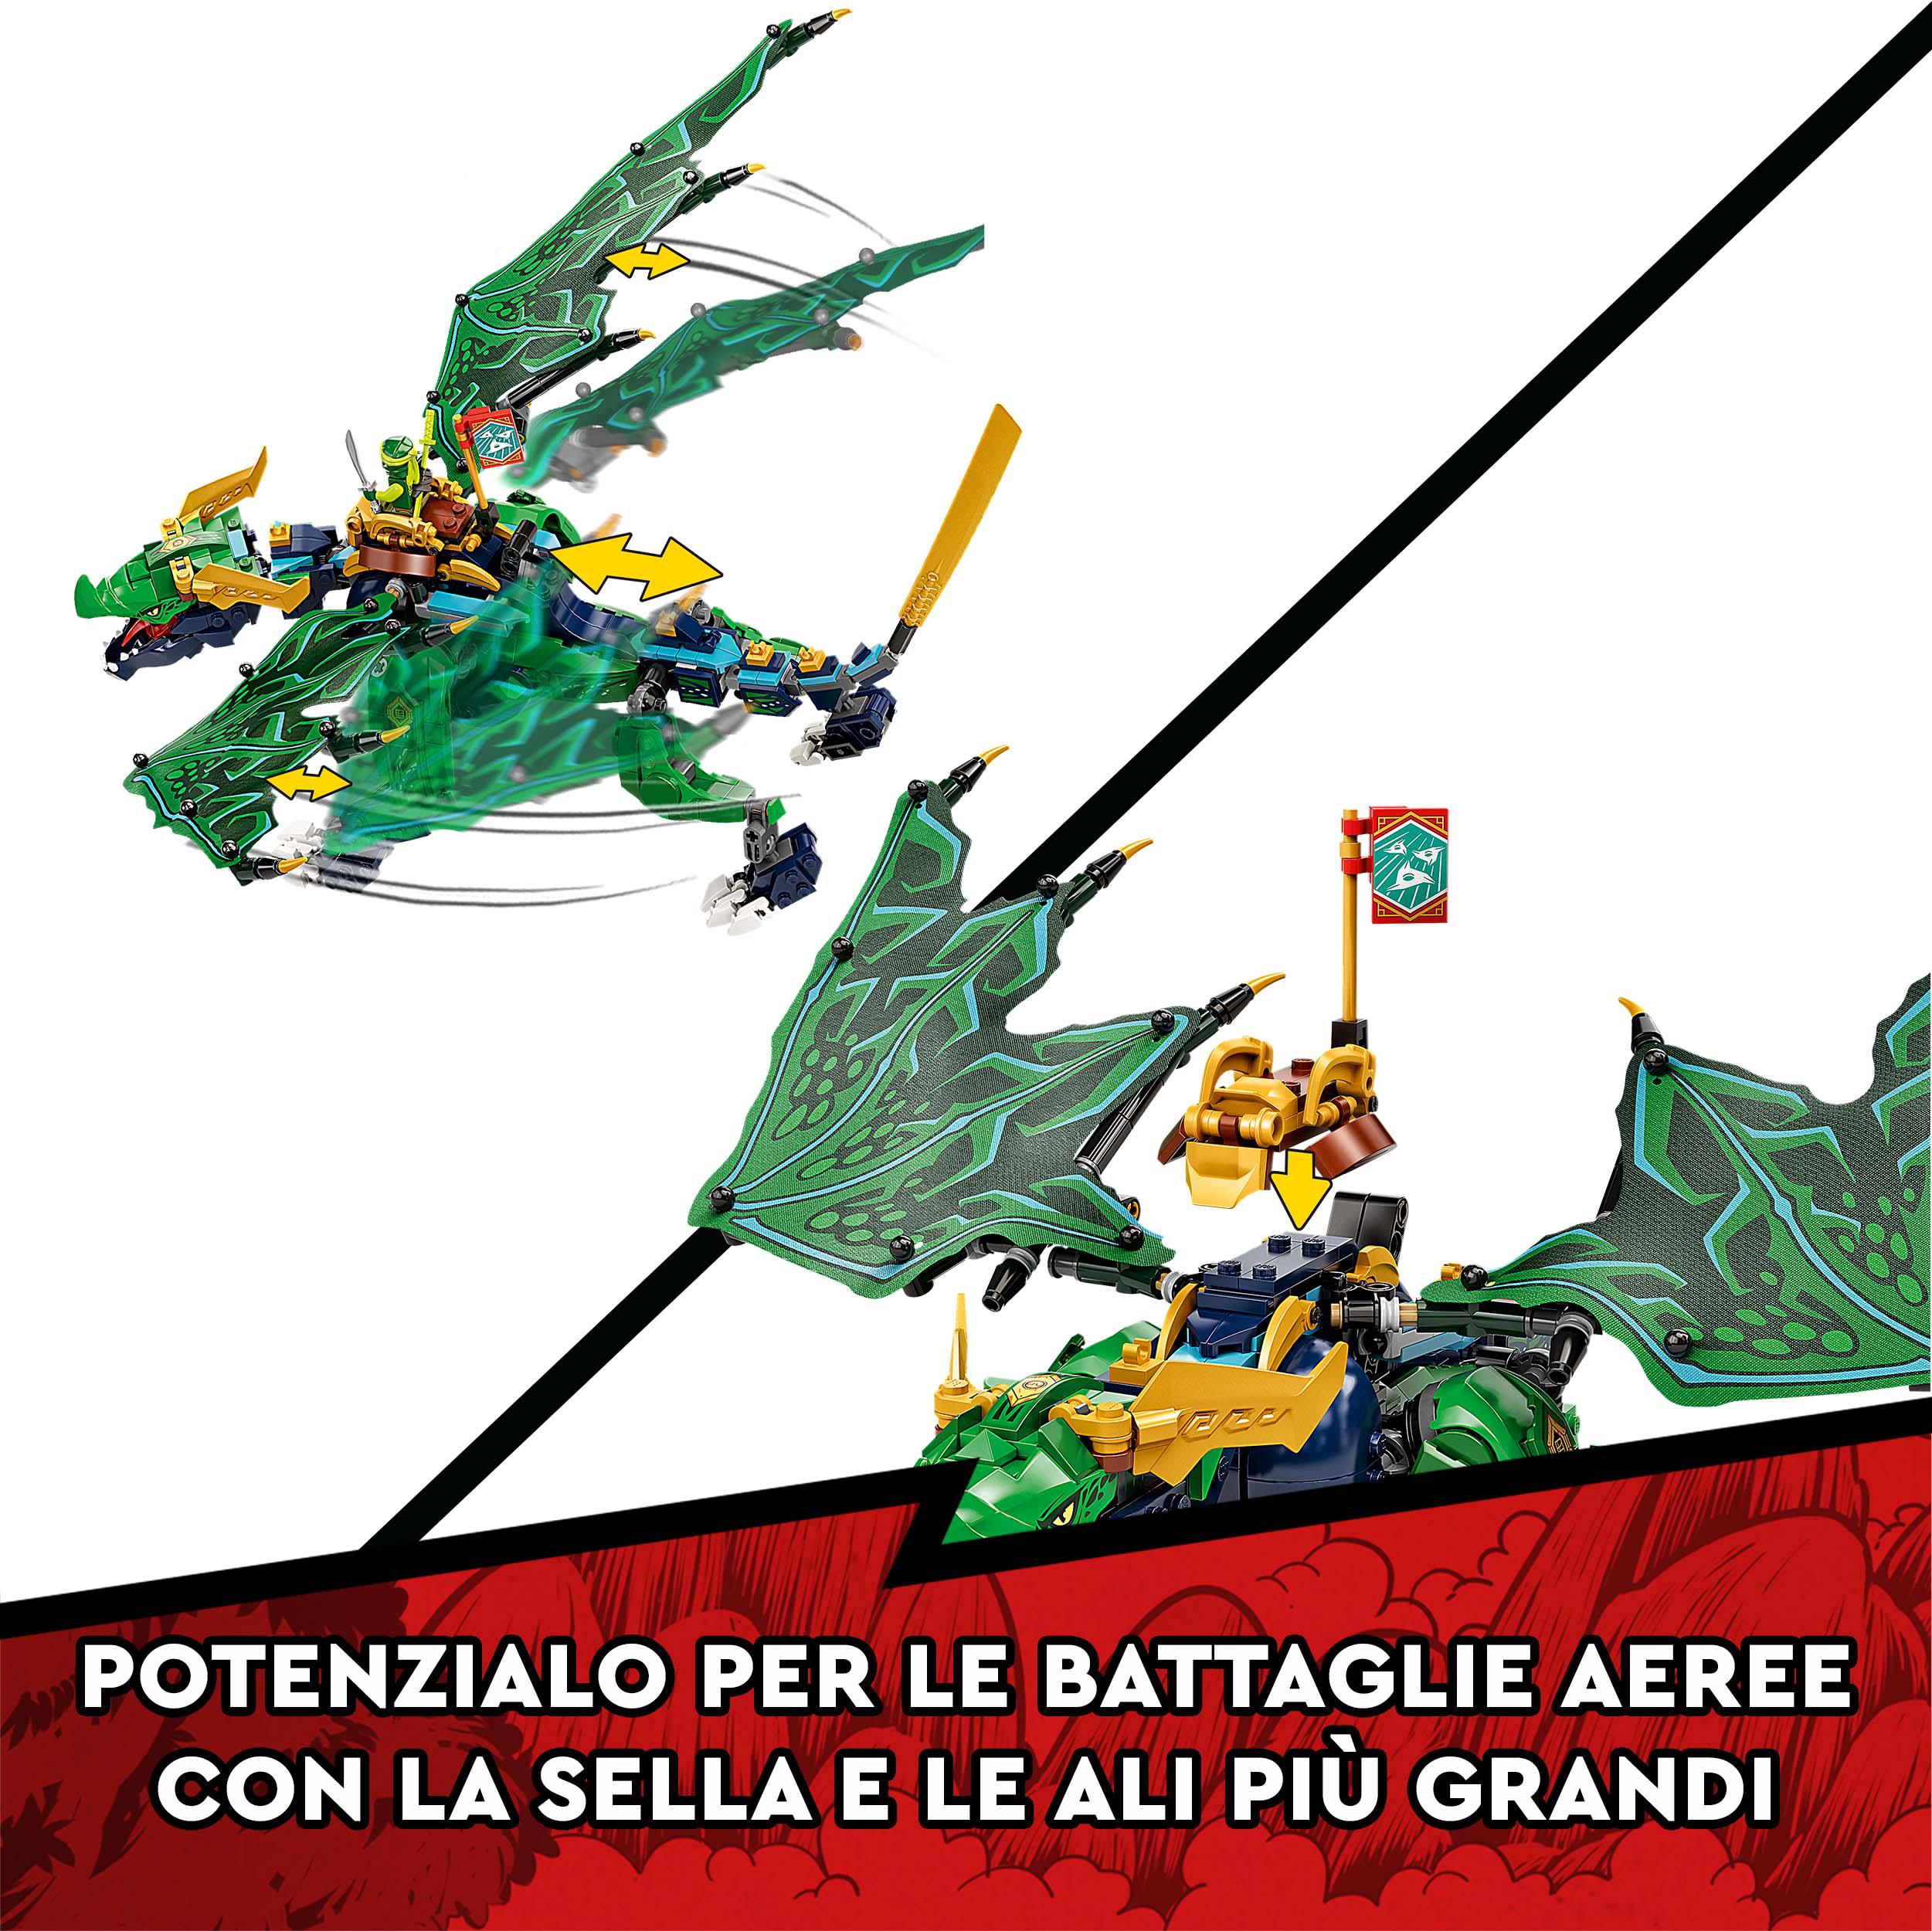 LEGO NINJAGO Dragone Leggendario di Lloyd, Giocattoli per Bambini di 8 Anni, Gue 71766, , large